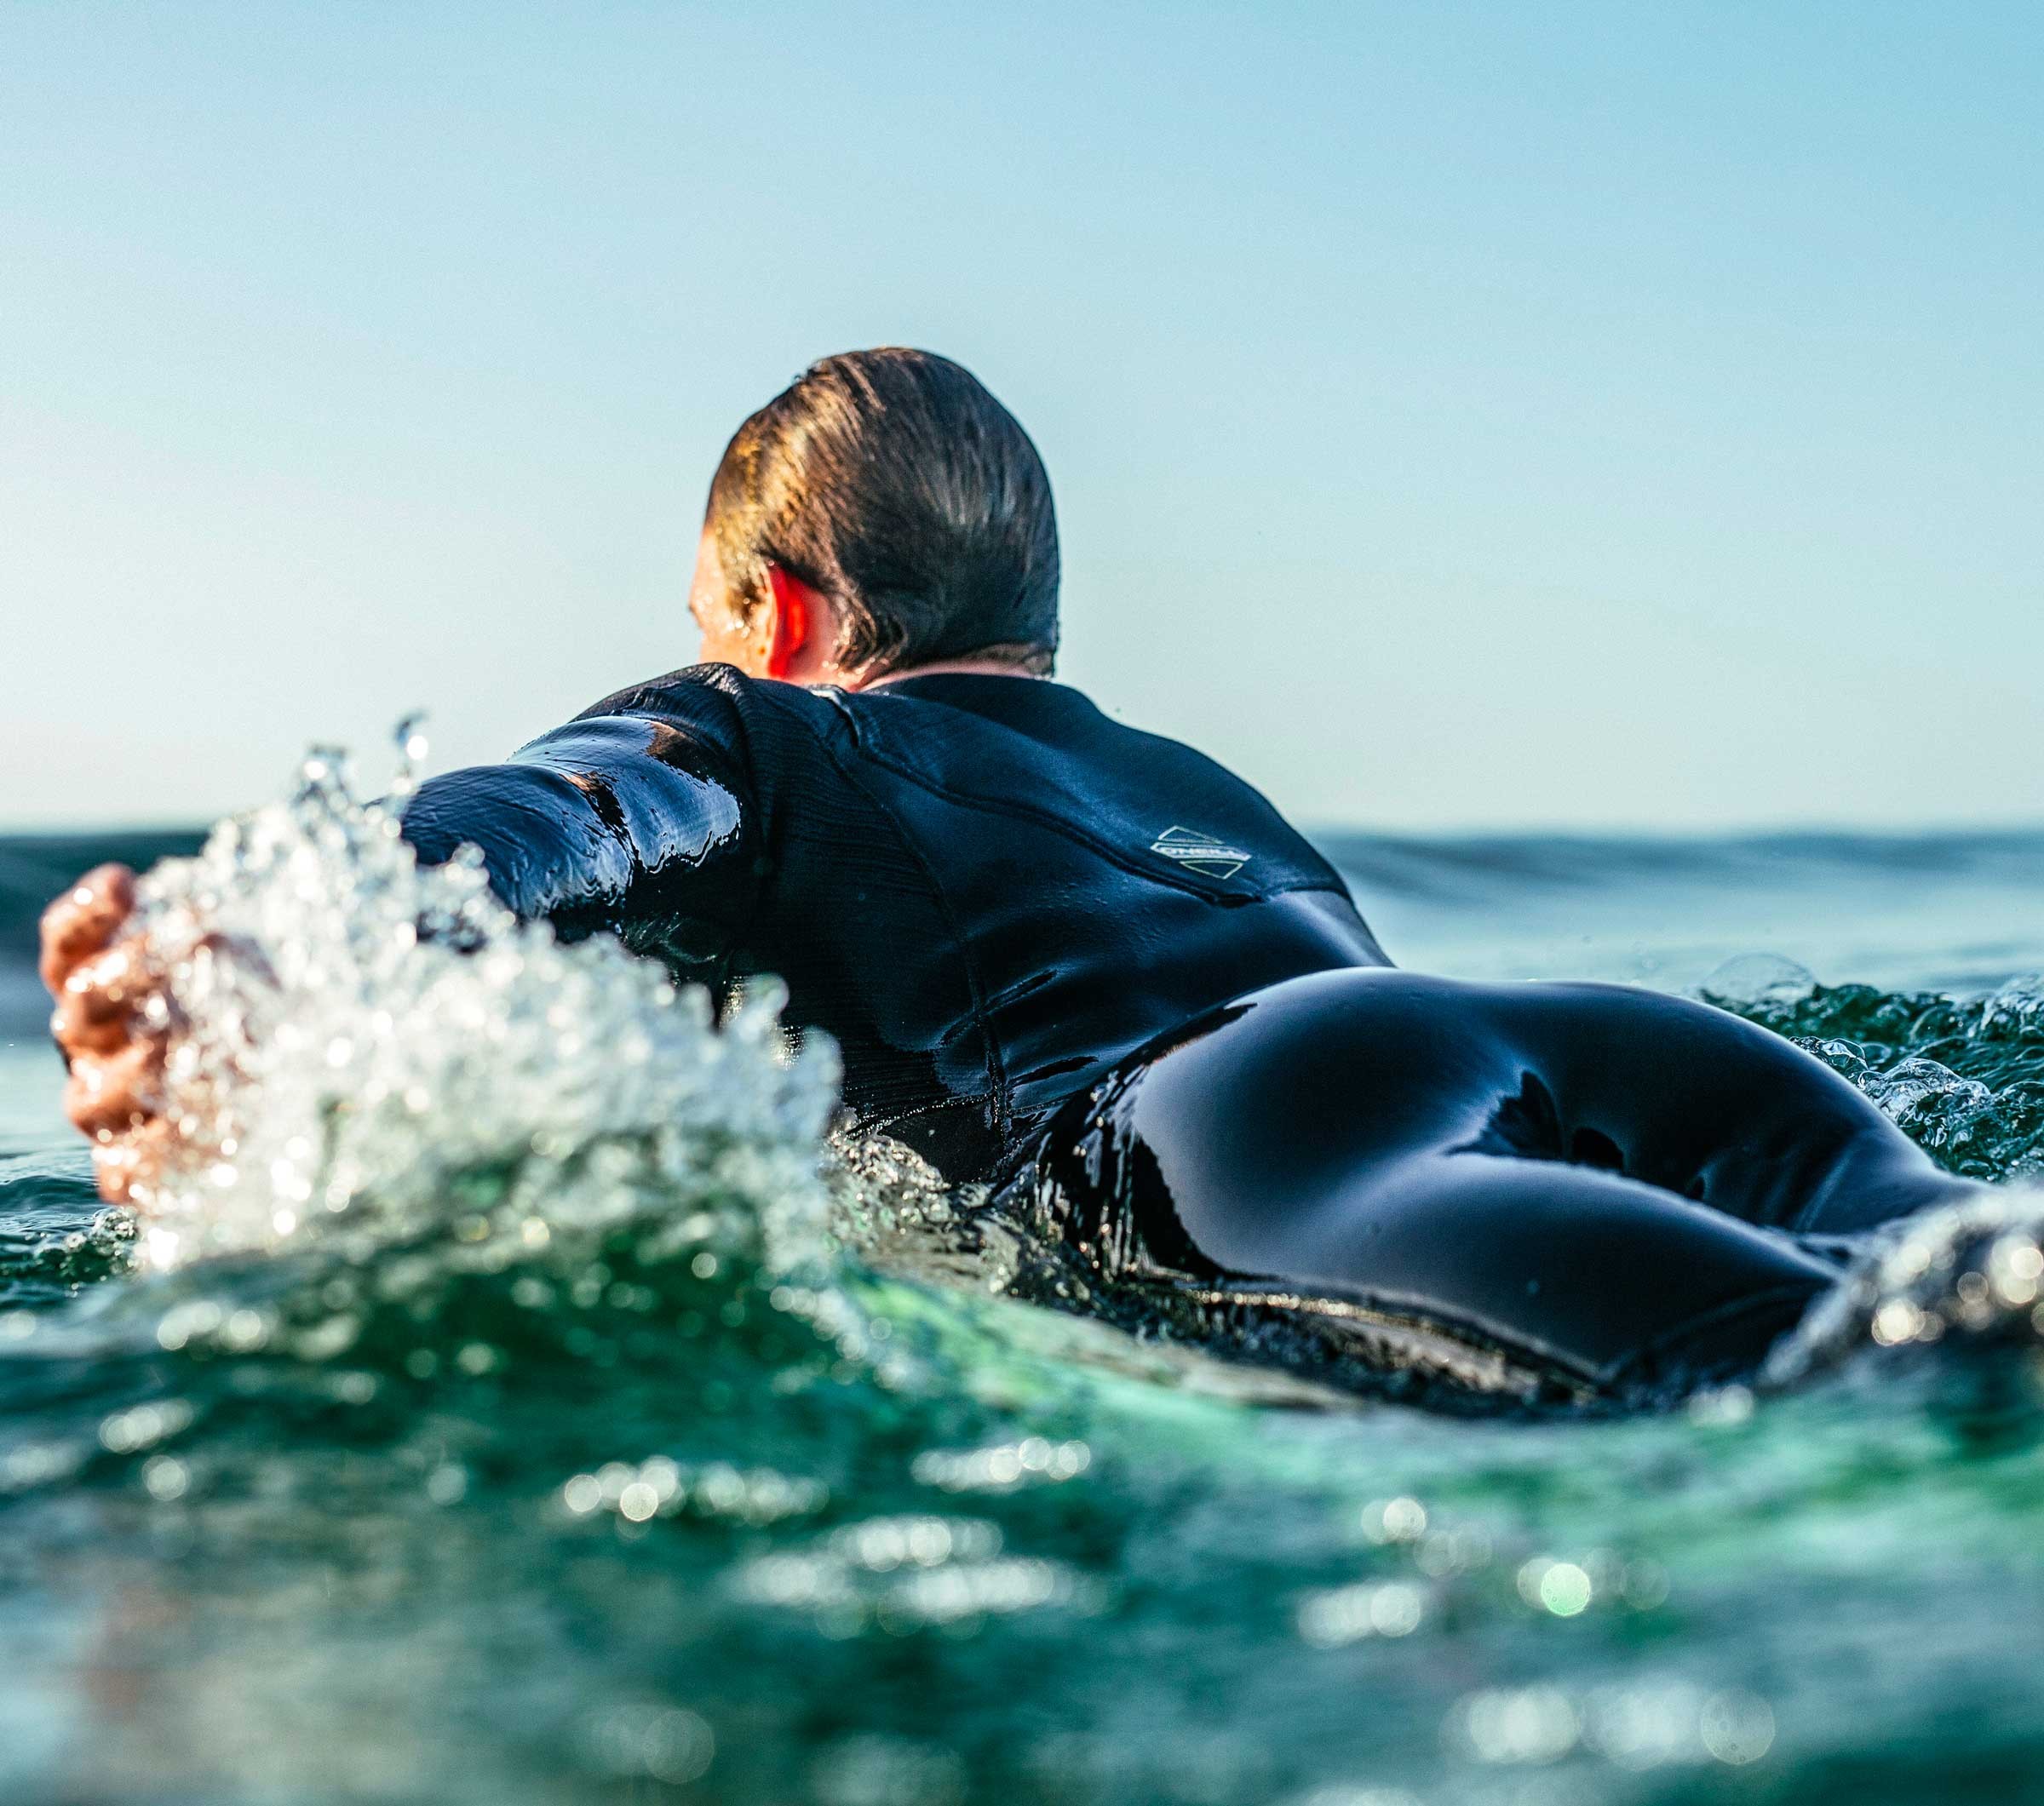 Poncho Surf: Cómo elegir el mejor modelo